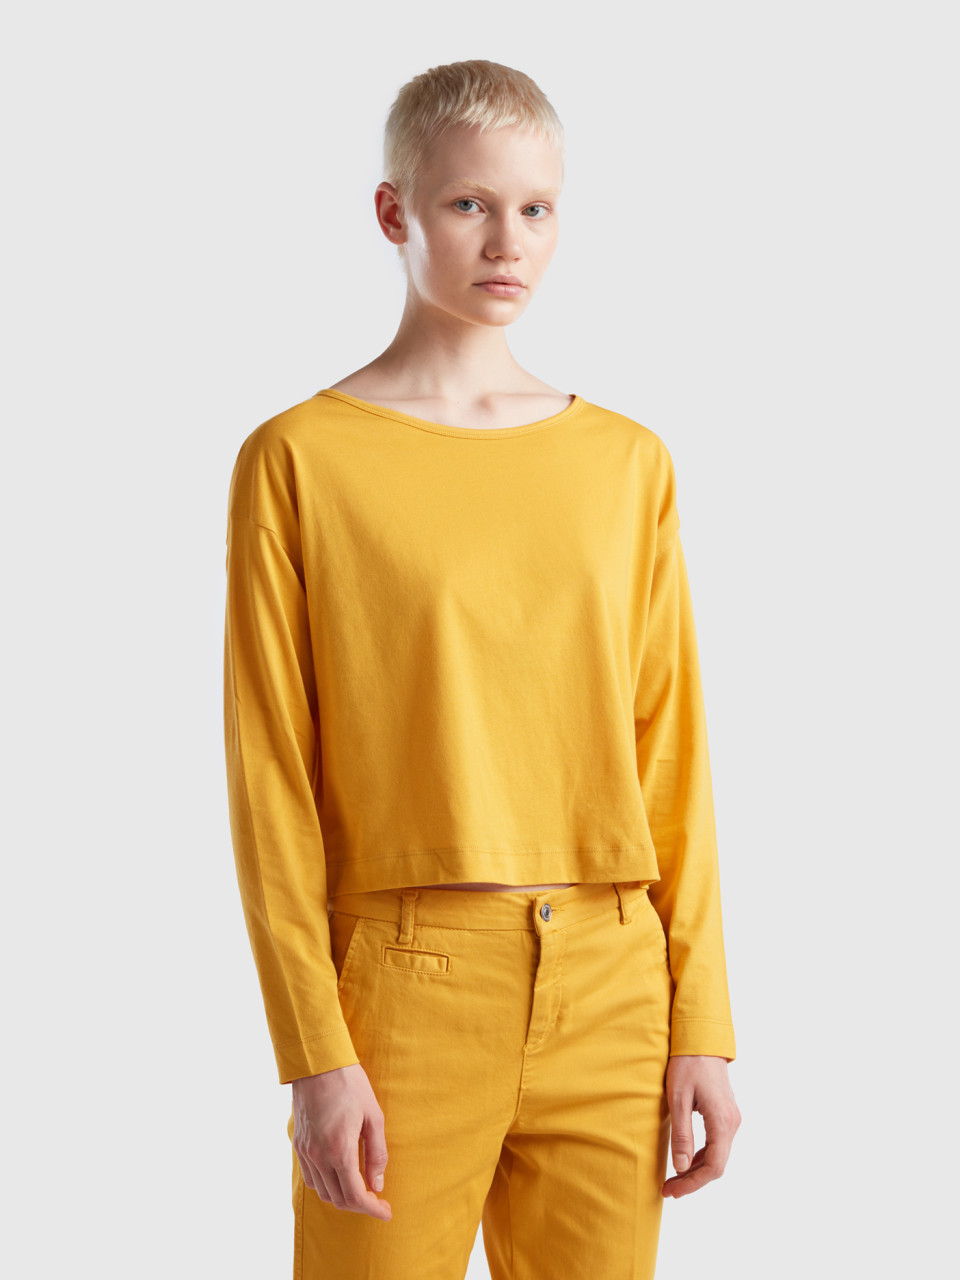 Benetton, Yellow Ochre Long Fiber Cotton T-shirt, Yellow, Women